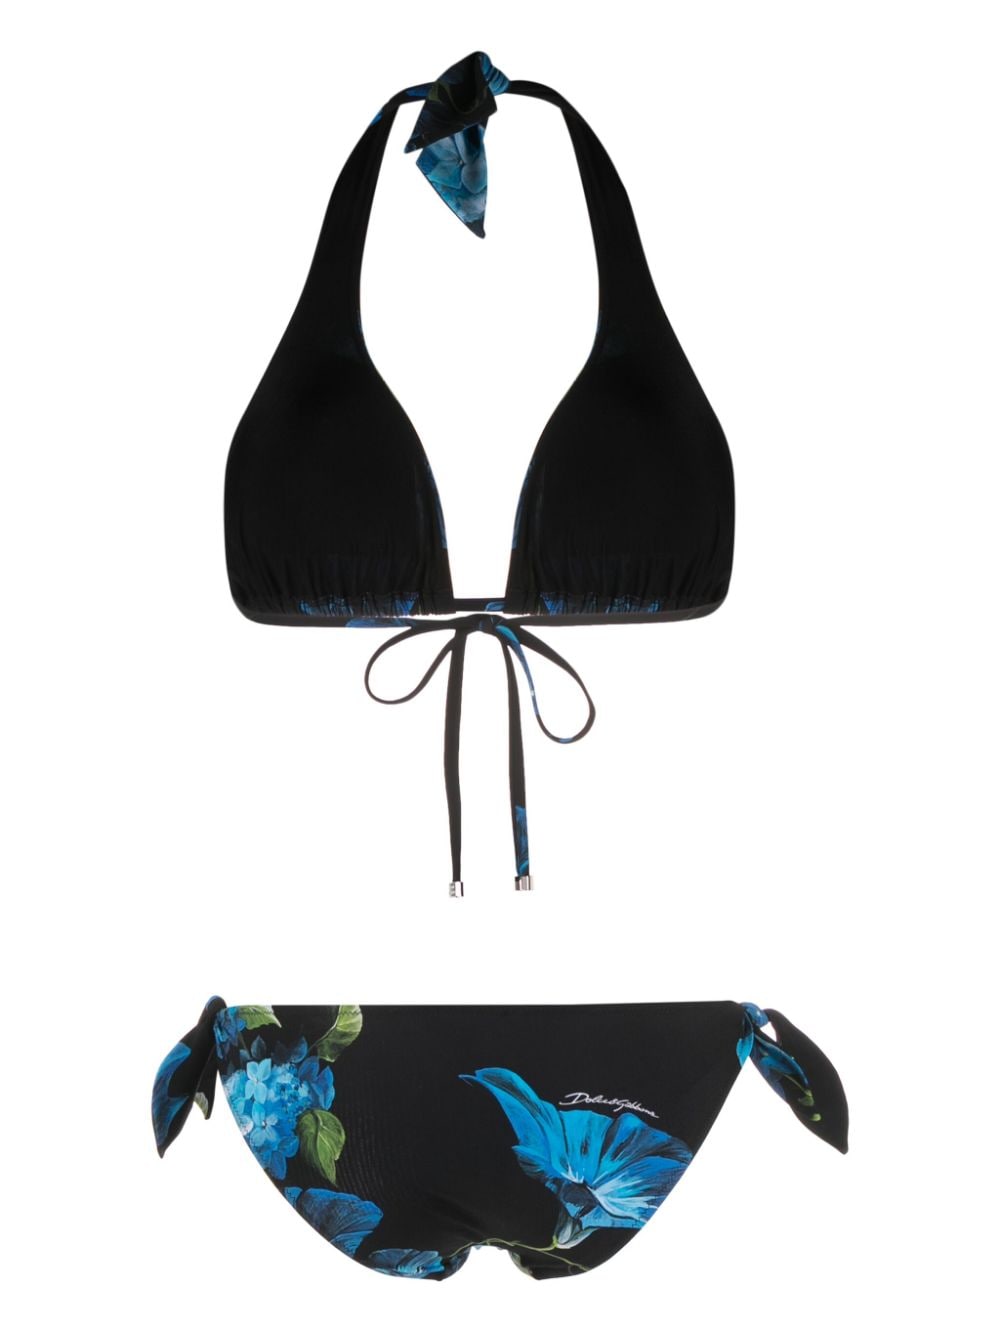 Floral print bikini set